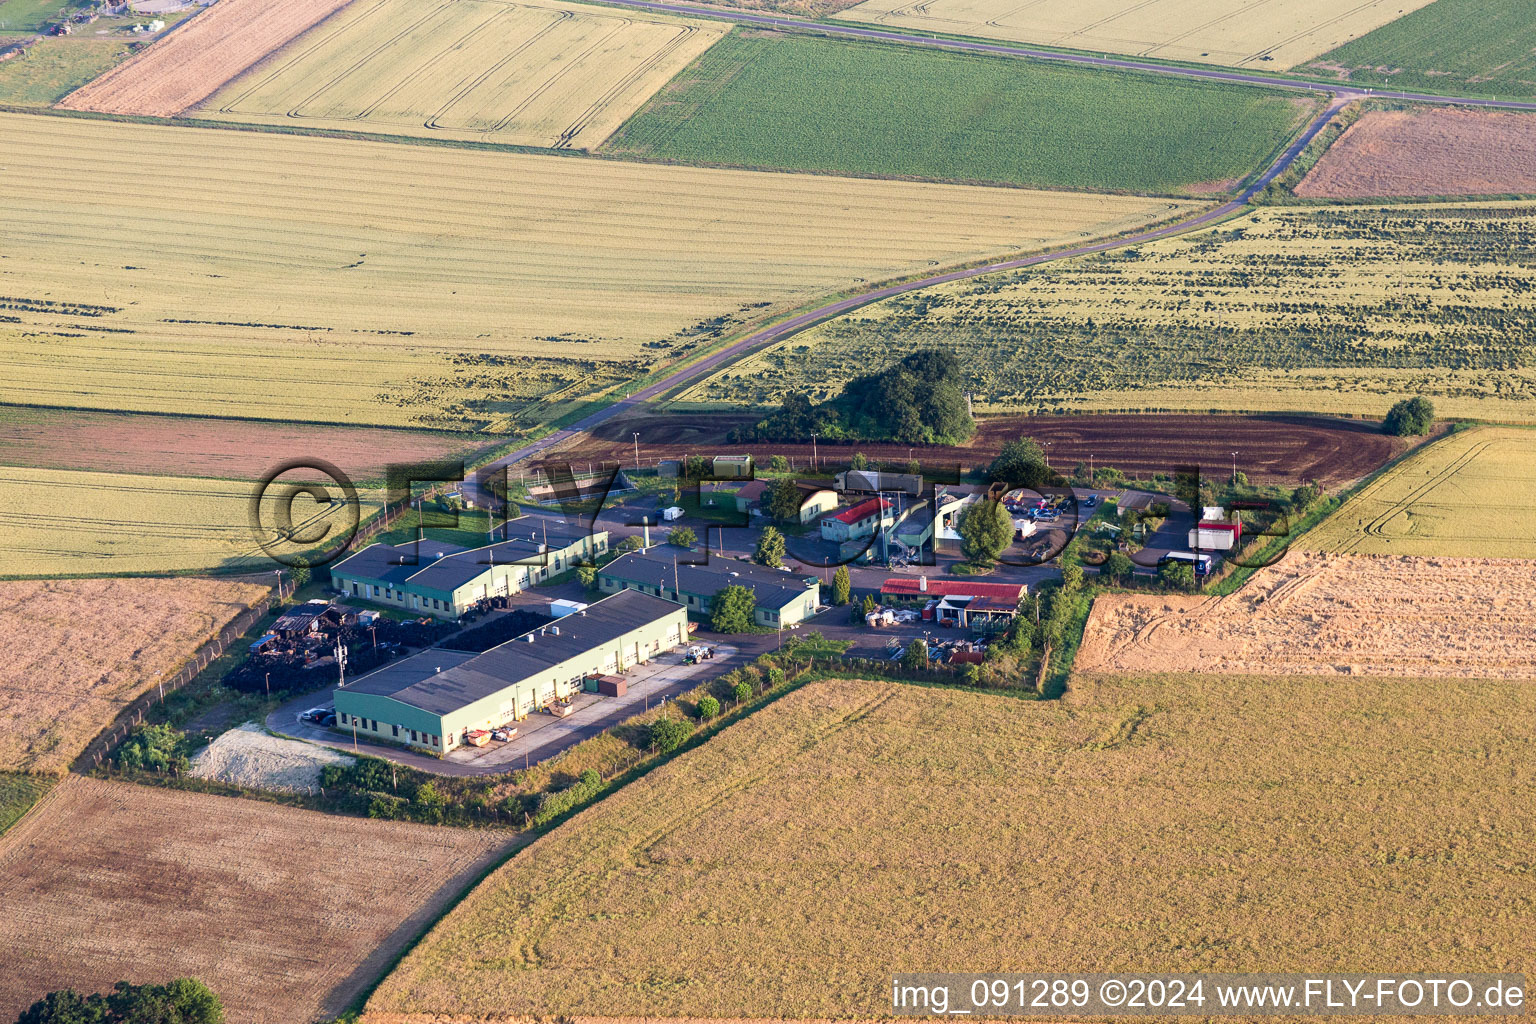 Gehöft eines Bauernhofes am Rand von bestellten Feldern in Orbis im Bundesland Rheinland-Pfalz, Deutschland